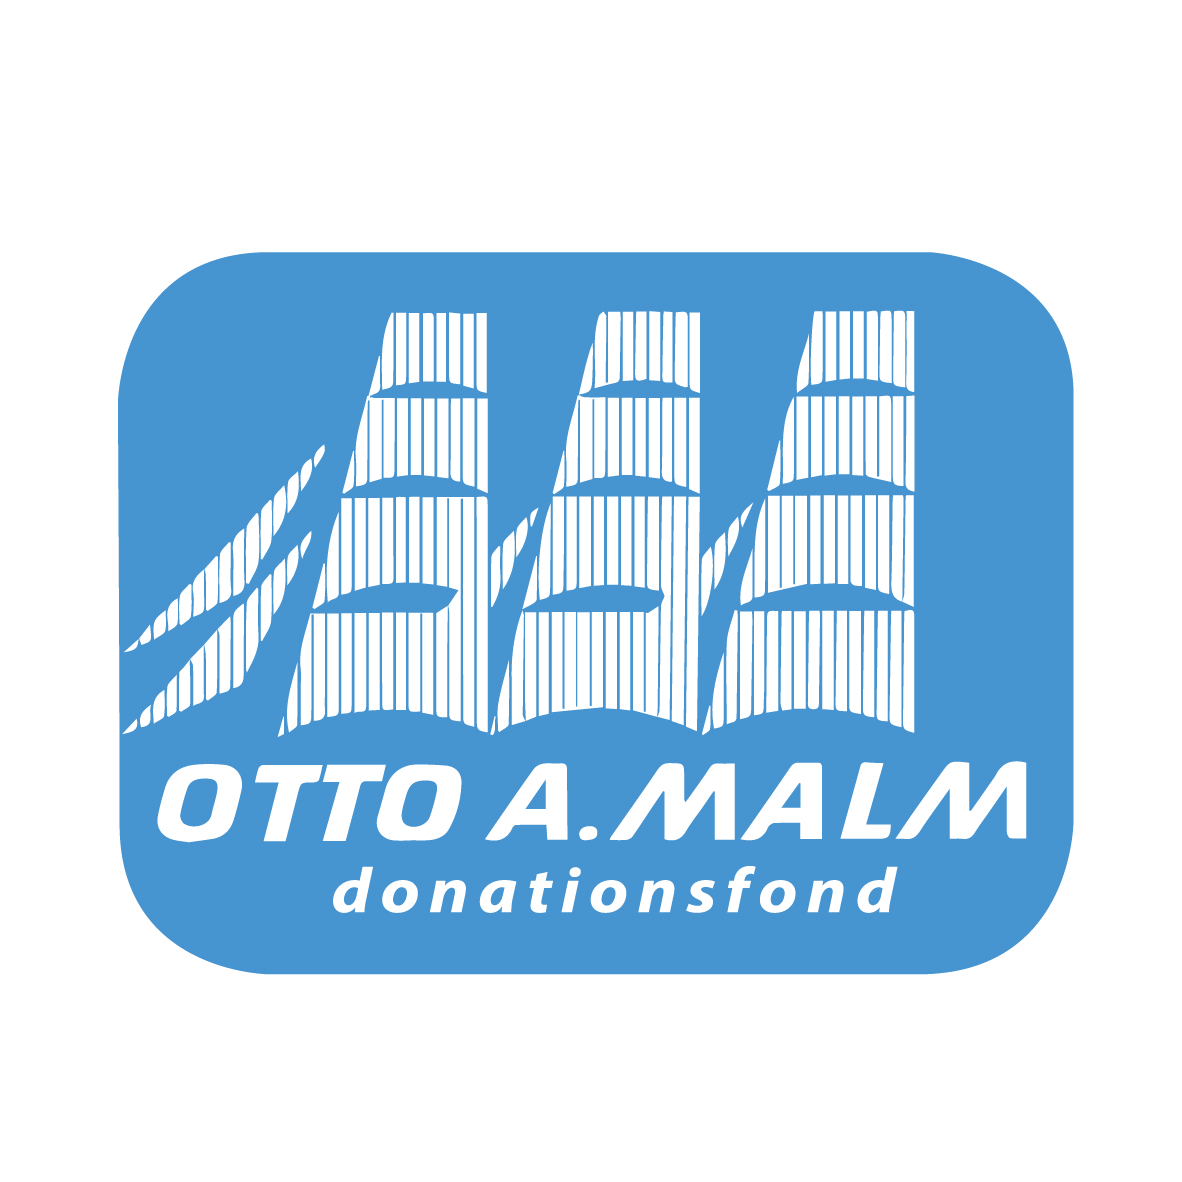 Logotyp för Otto A. Malm Donationsfond. Logotypens bakgrund är ljusblå med siluetter av vita segel ovanpå. Under dem står texten 'Otto A. Malm' med vita versaler, och under dem står ordet 'donationsfond'.